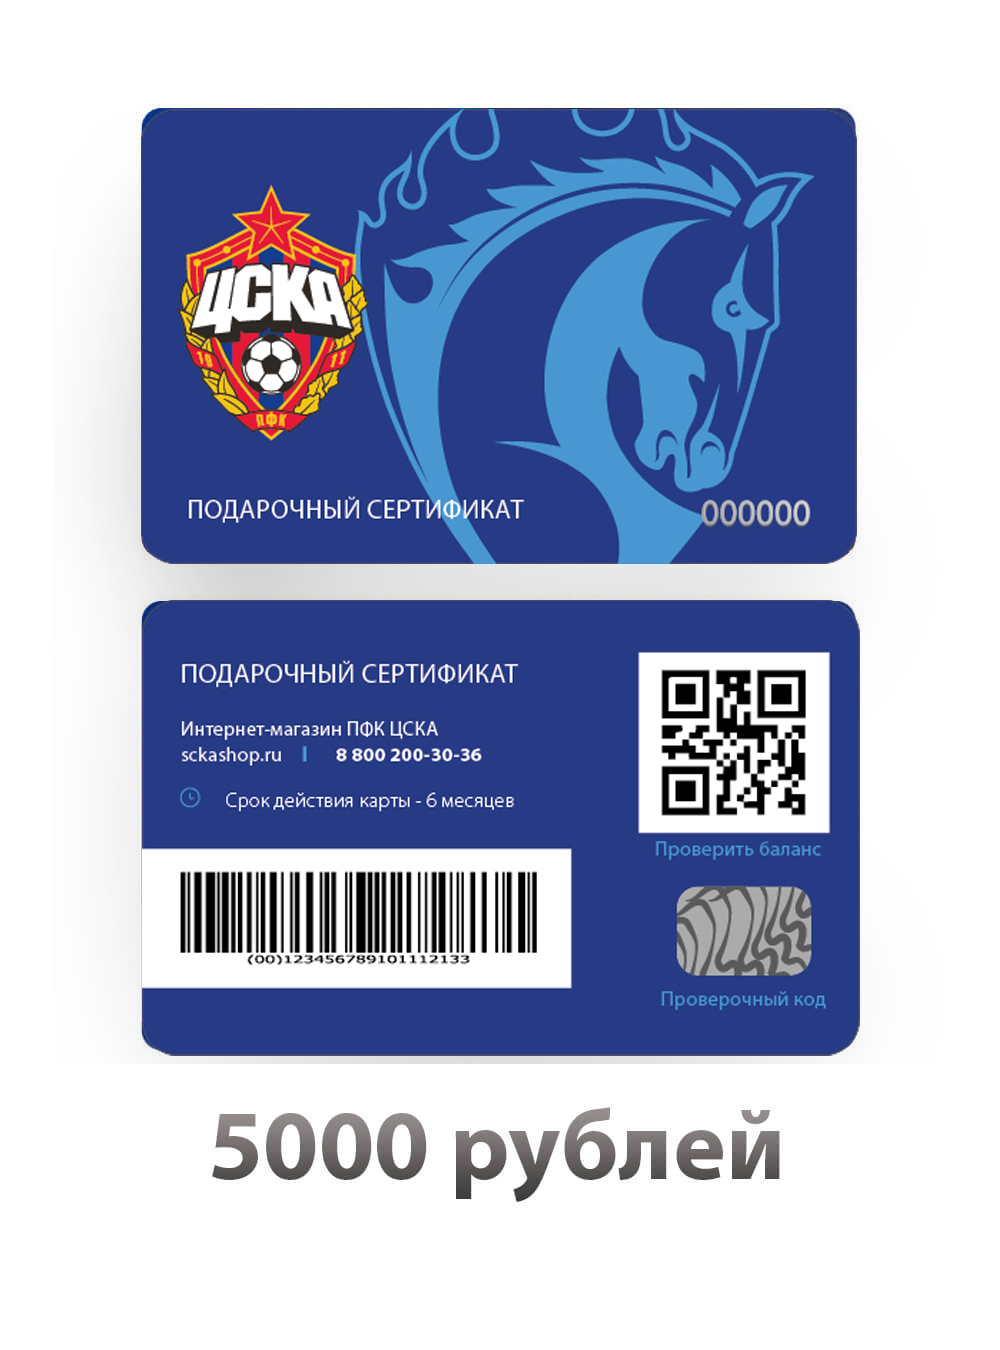 Купить Подарочный сертификат на 5000 рублей (Подарочная карта на 5000 рублей) по Нижнему Новгороду